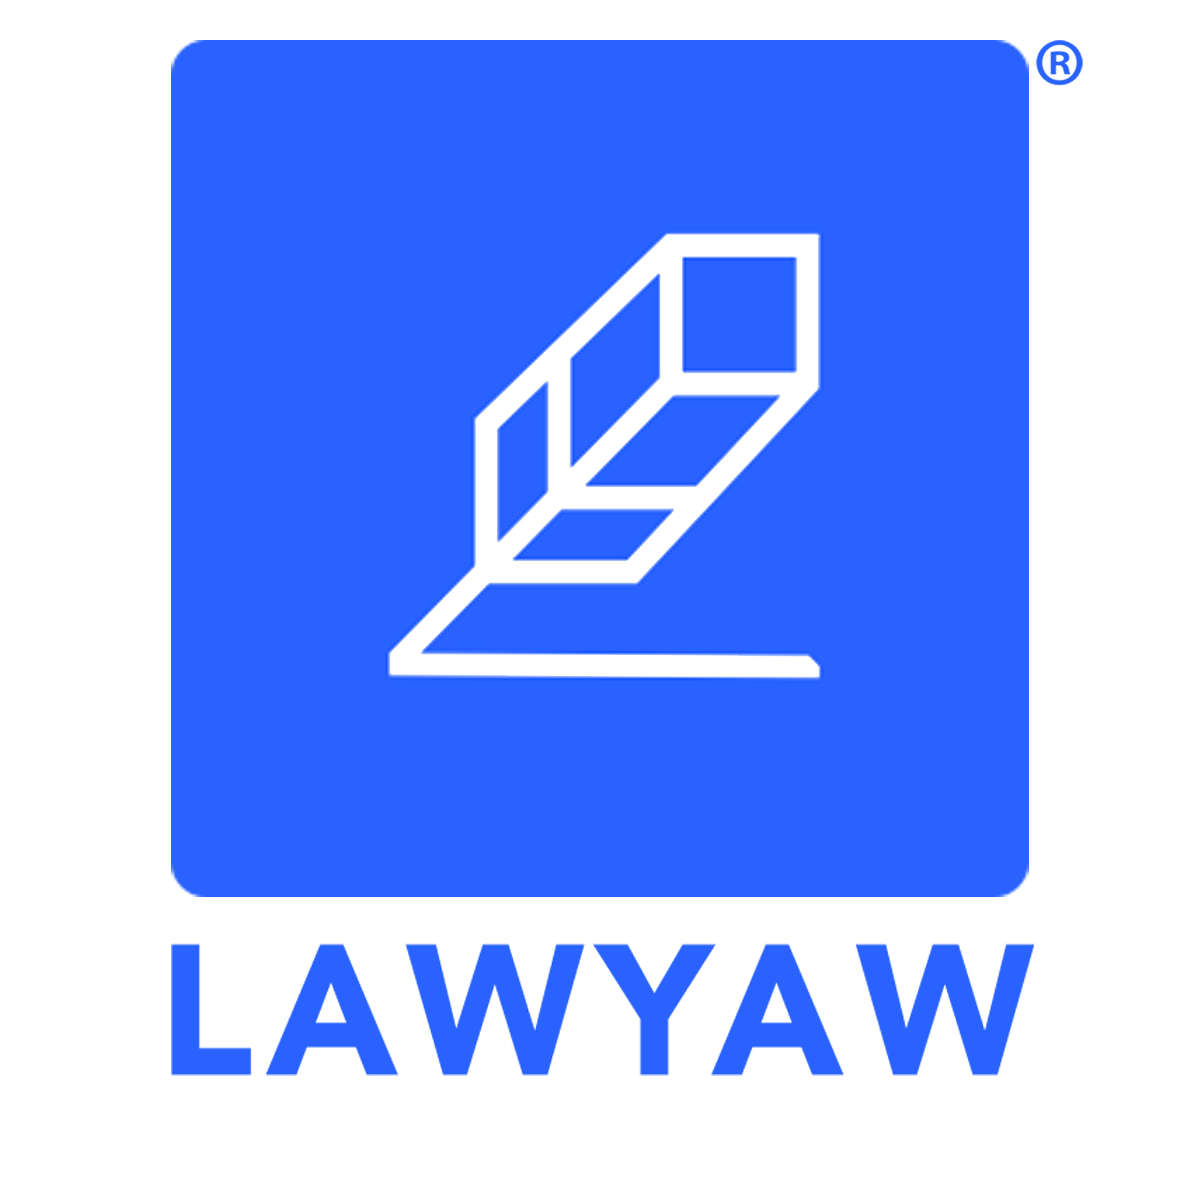 LawYaw logo